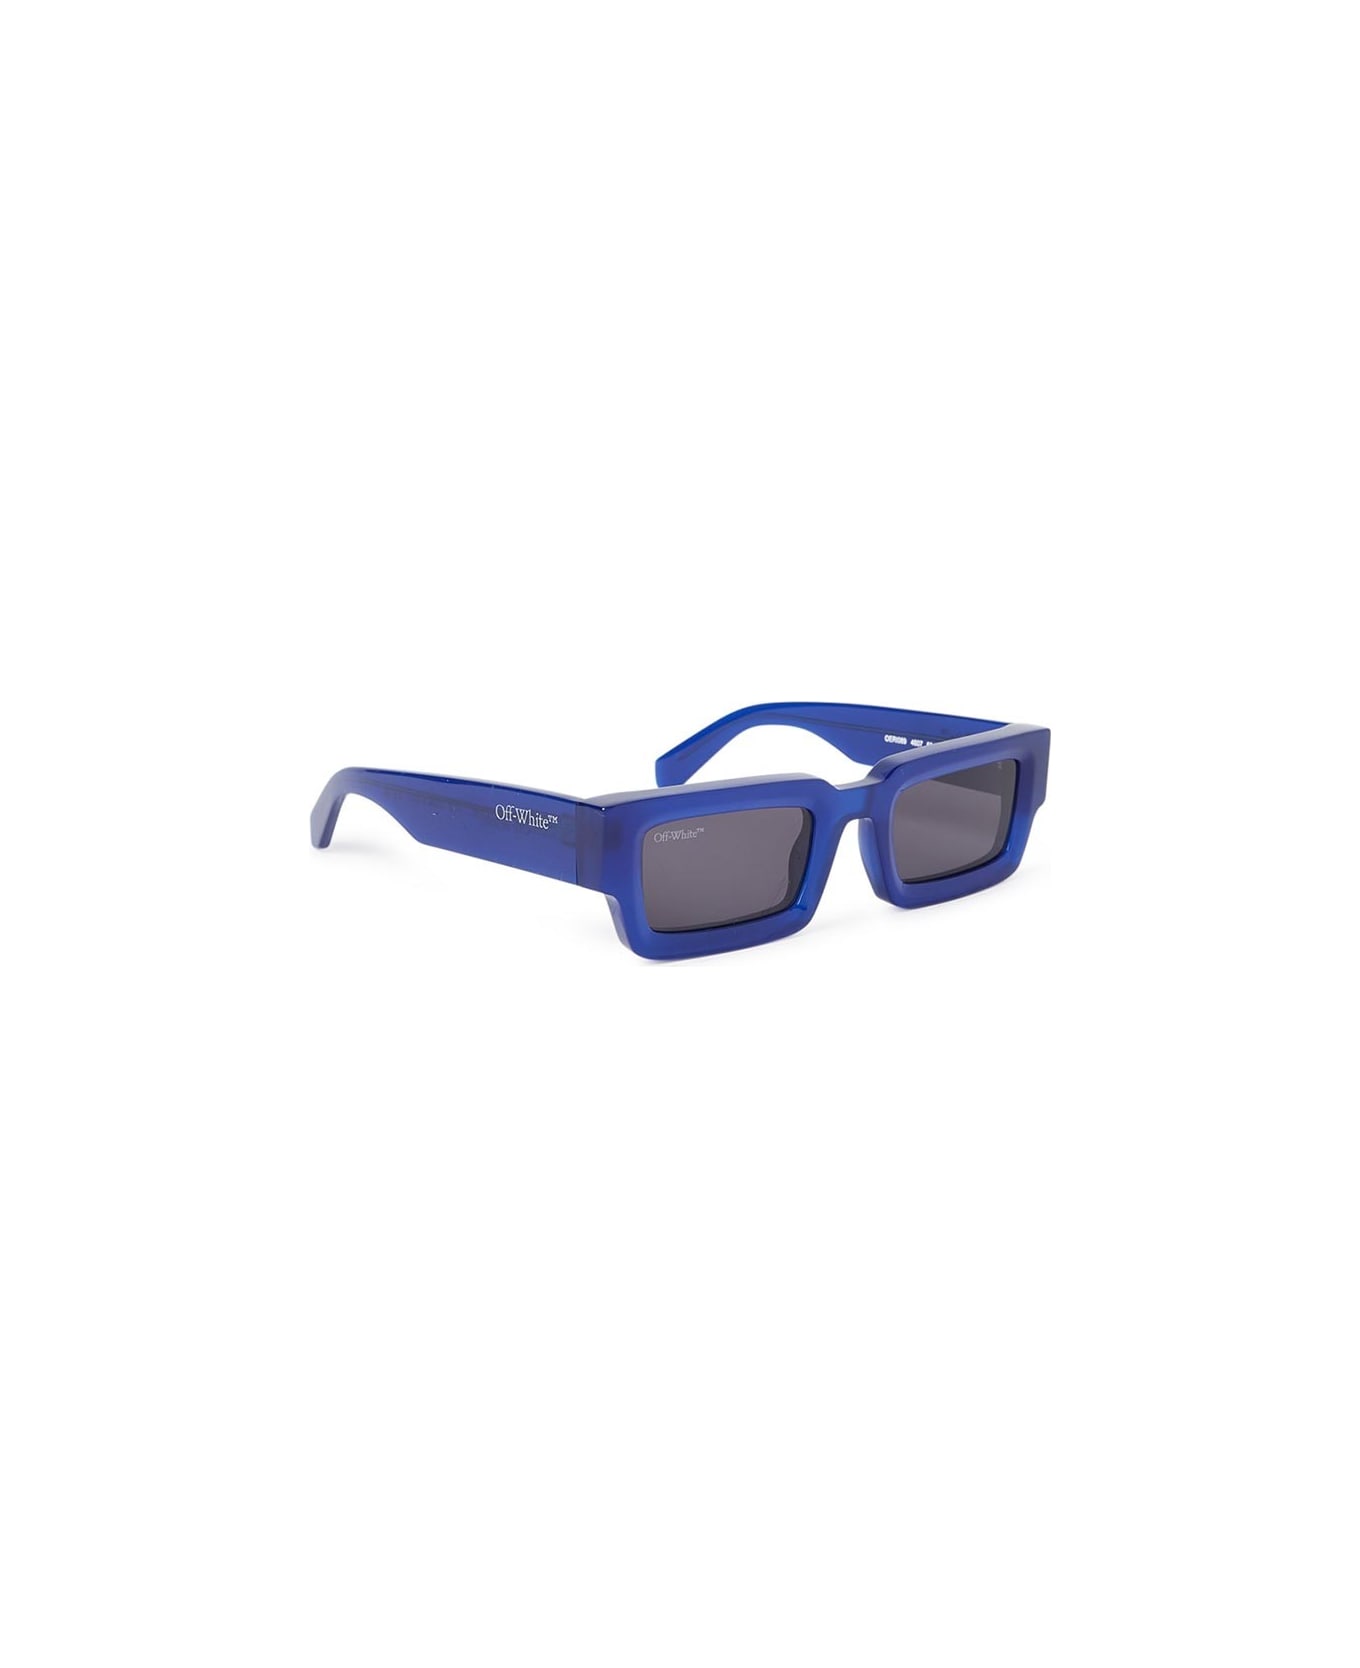 Off-White Lecce Sunglasses - 4607 BLUE